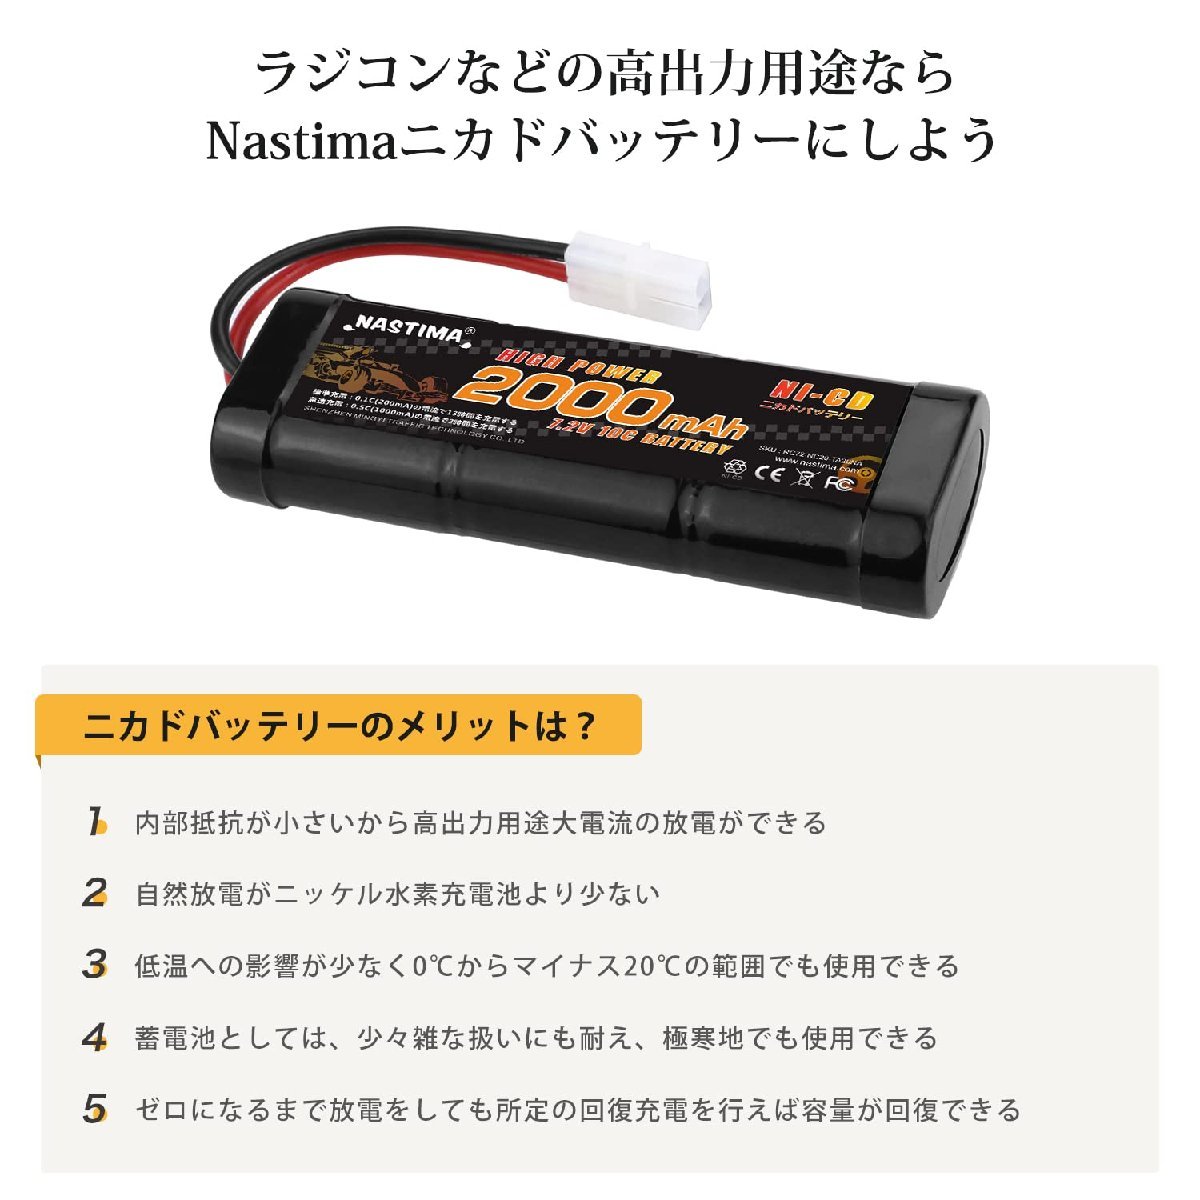  бесплатная доставка *Nastima радиоконтроллер nikado аккумулятор 7.2V 2000mAh рейсинг упаковка Tamiya сменный коннектор 